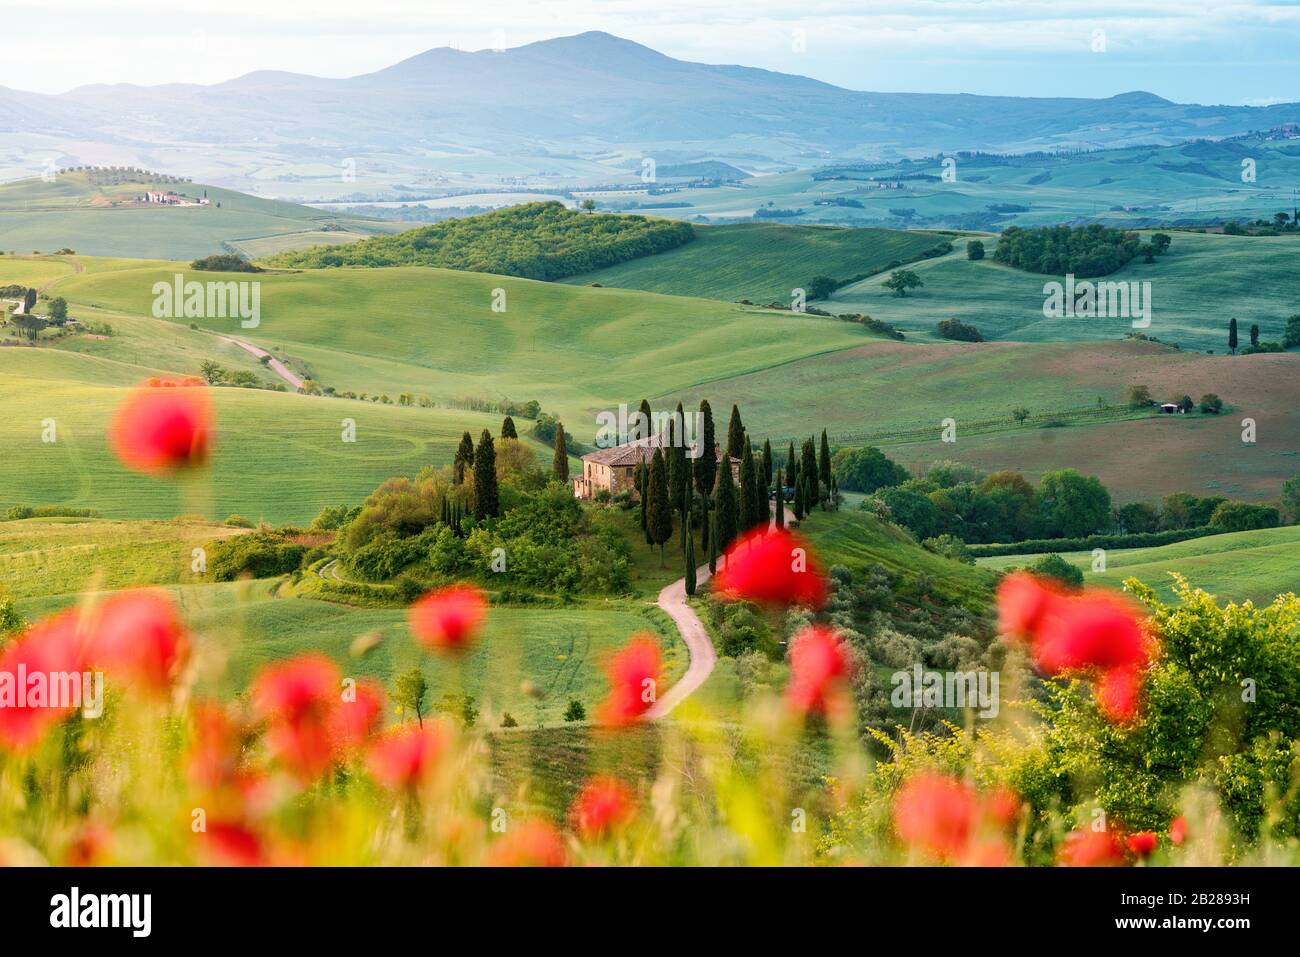 Flores de amapola y pradera en primavera, colinas onduladas en el fondo. Toscana Foto de stock